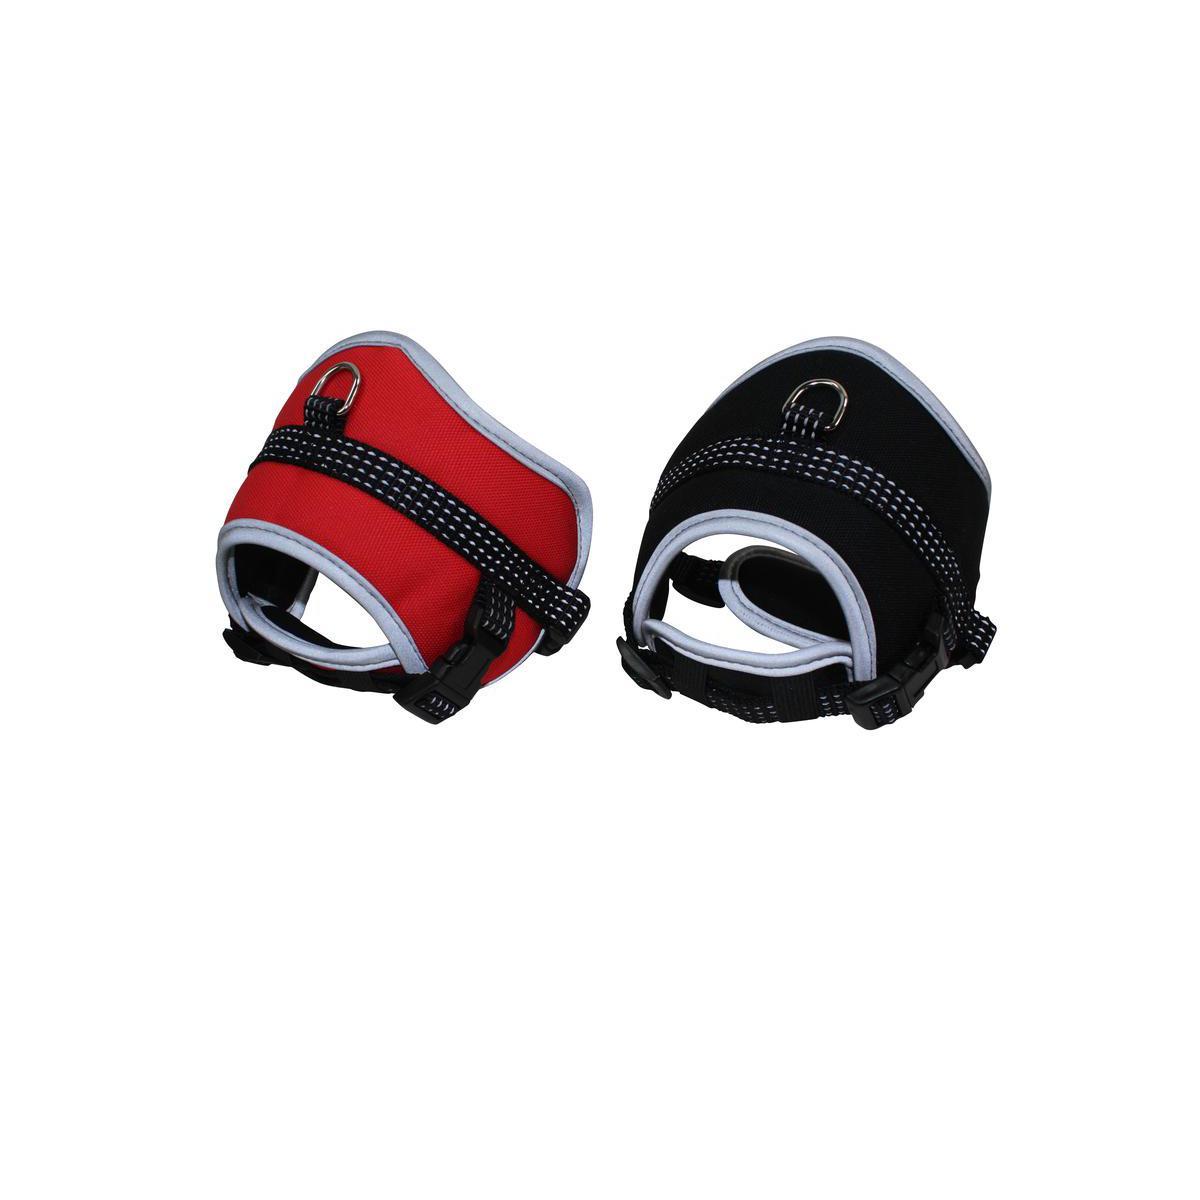 Harnais protection confort - Nylon - 11 x 9 cm - Noir ou rouge